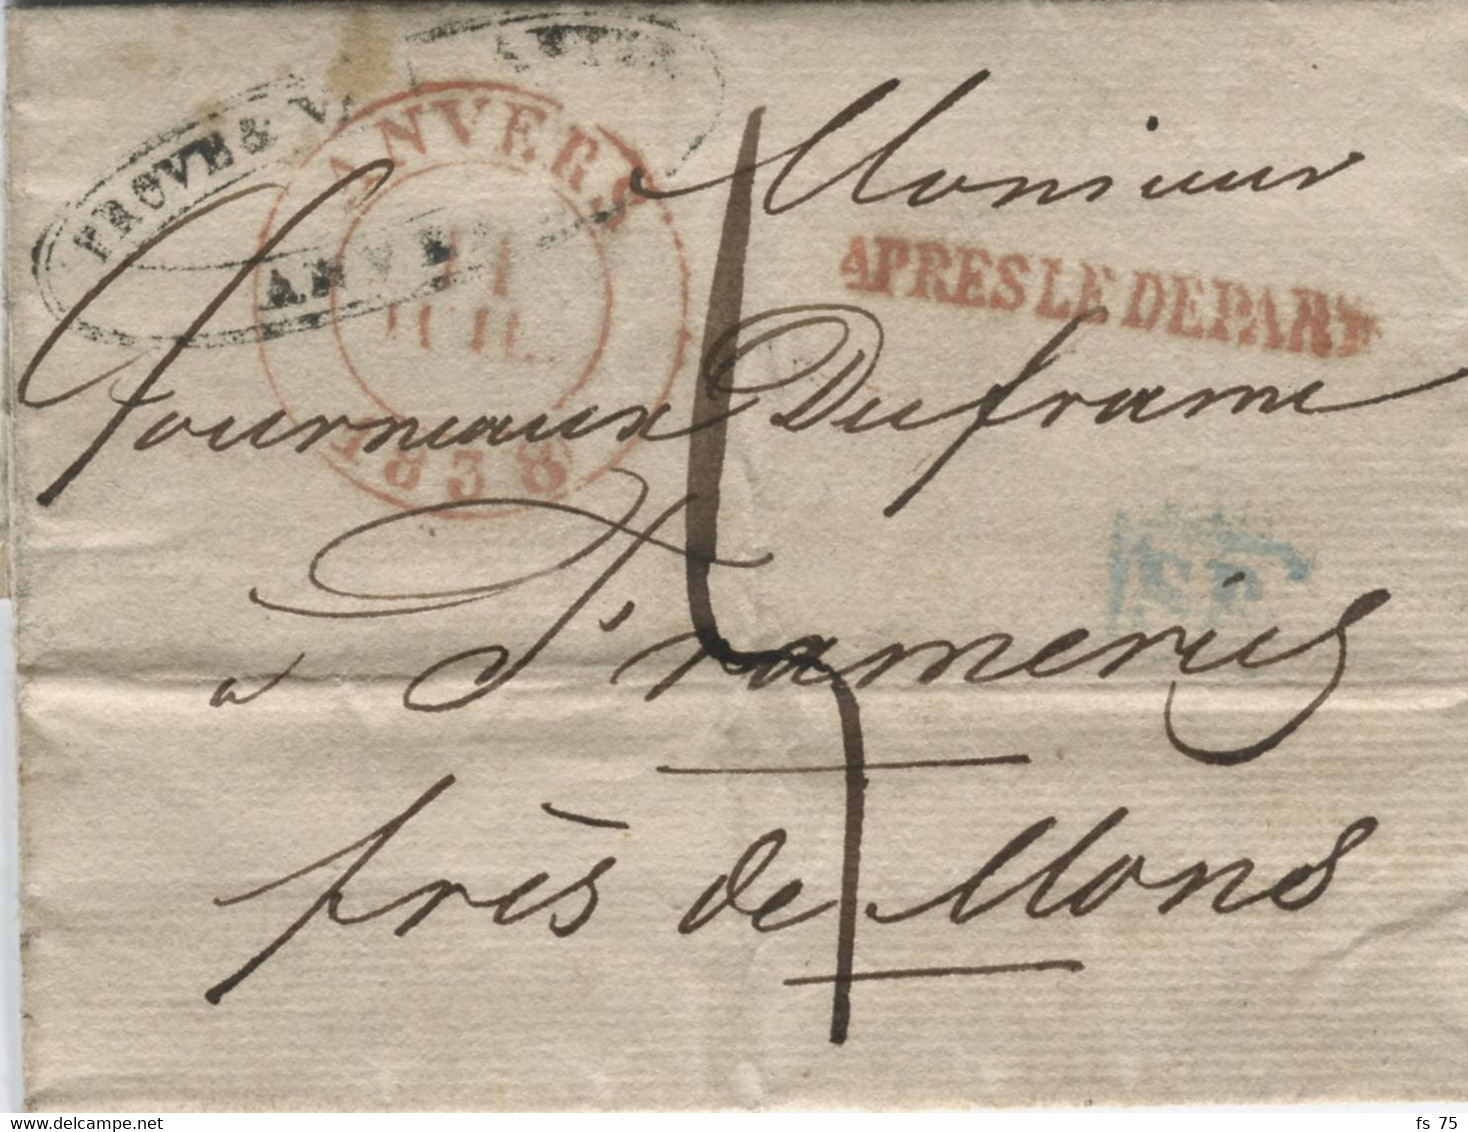 BELGIQUE - ANVERS + APRES LE DEPART SUR LETTRE SANS CORRESPONDANCE, 1838 - 1830-1849 (Onafhankelijk België)